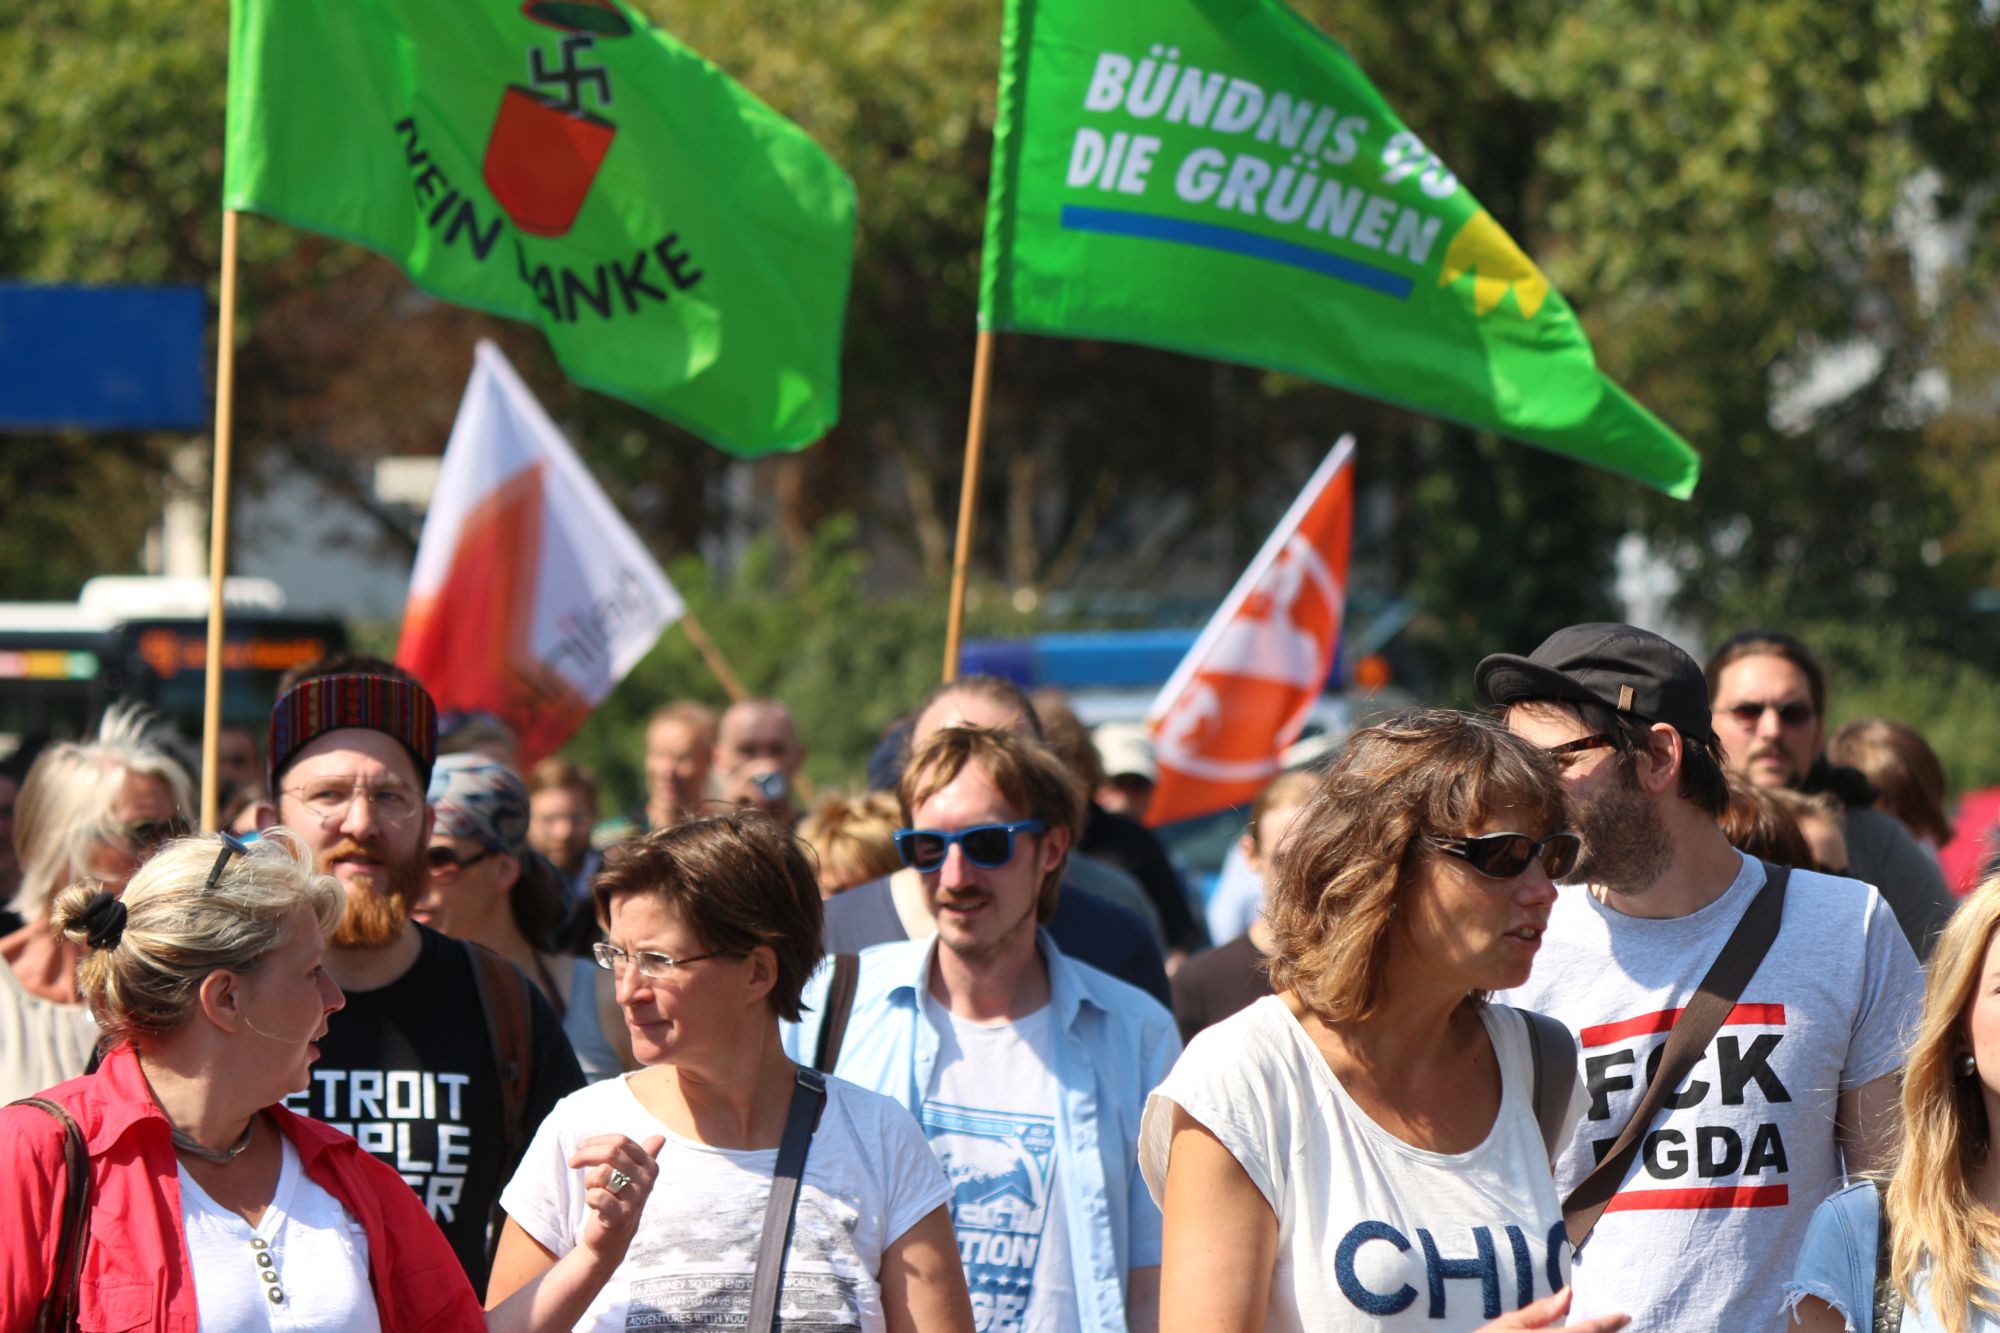 Bündnis “Salzkotten steht auf!” verbreitert sich: Auch CDU-Kreisspitze ist jetzt beim Protest gegen AfD dabei